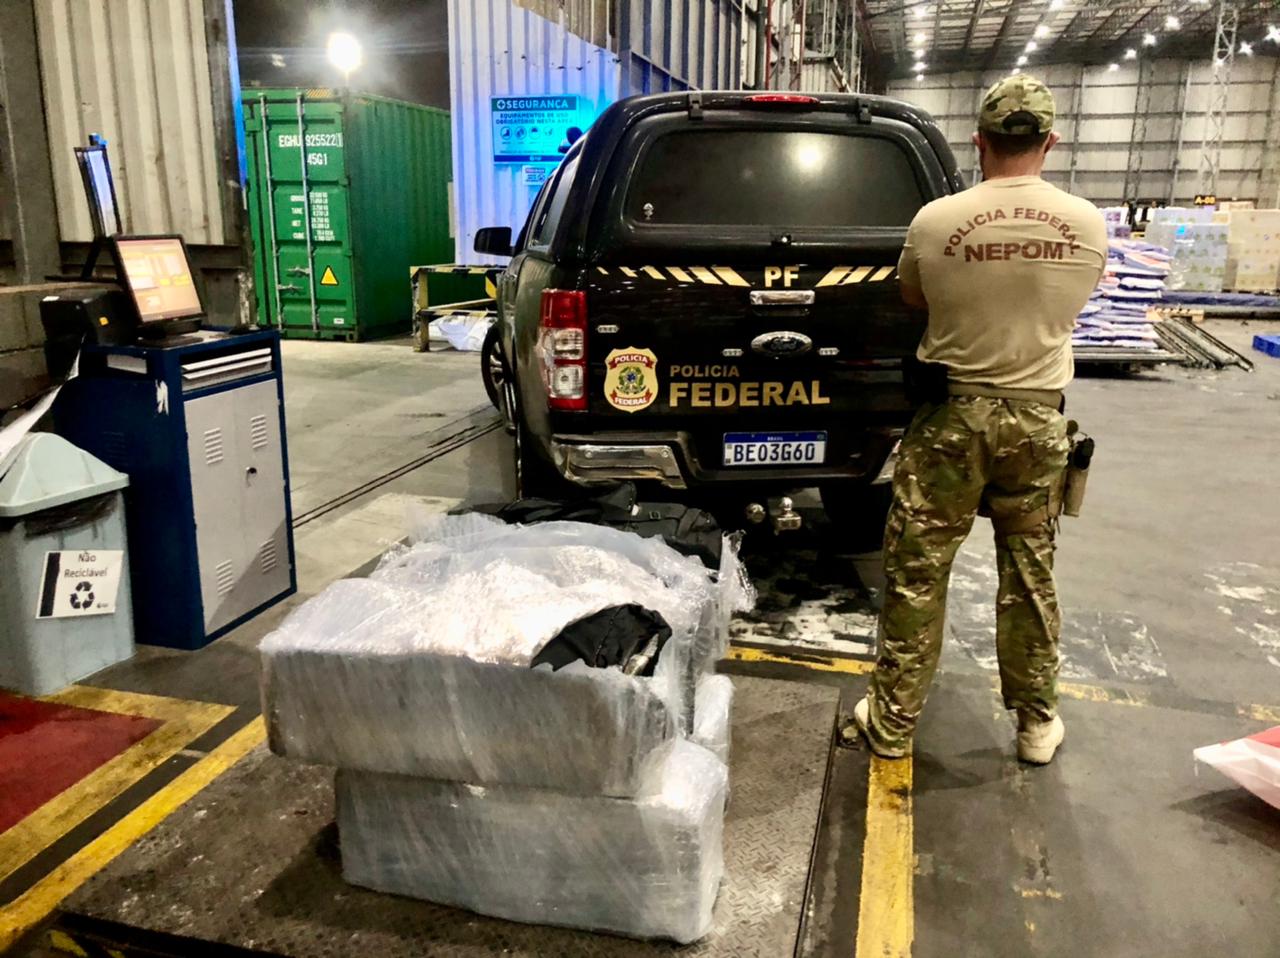 Polícia Federal apreende cocaína em caminhão no Porto de Paranaguá